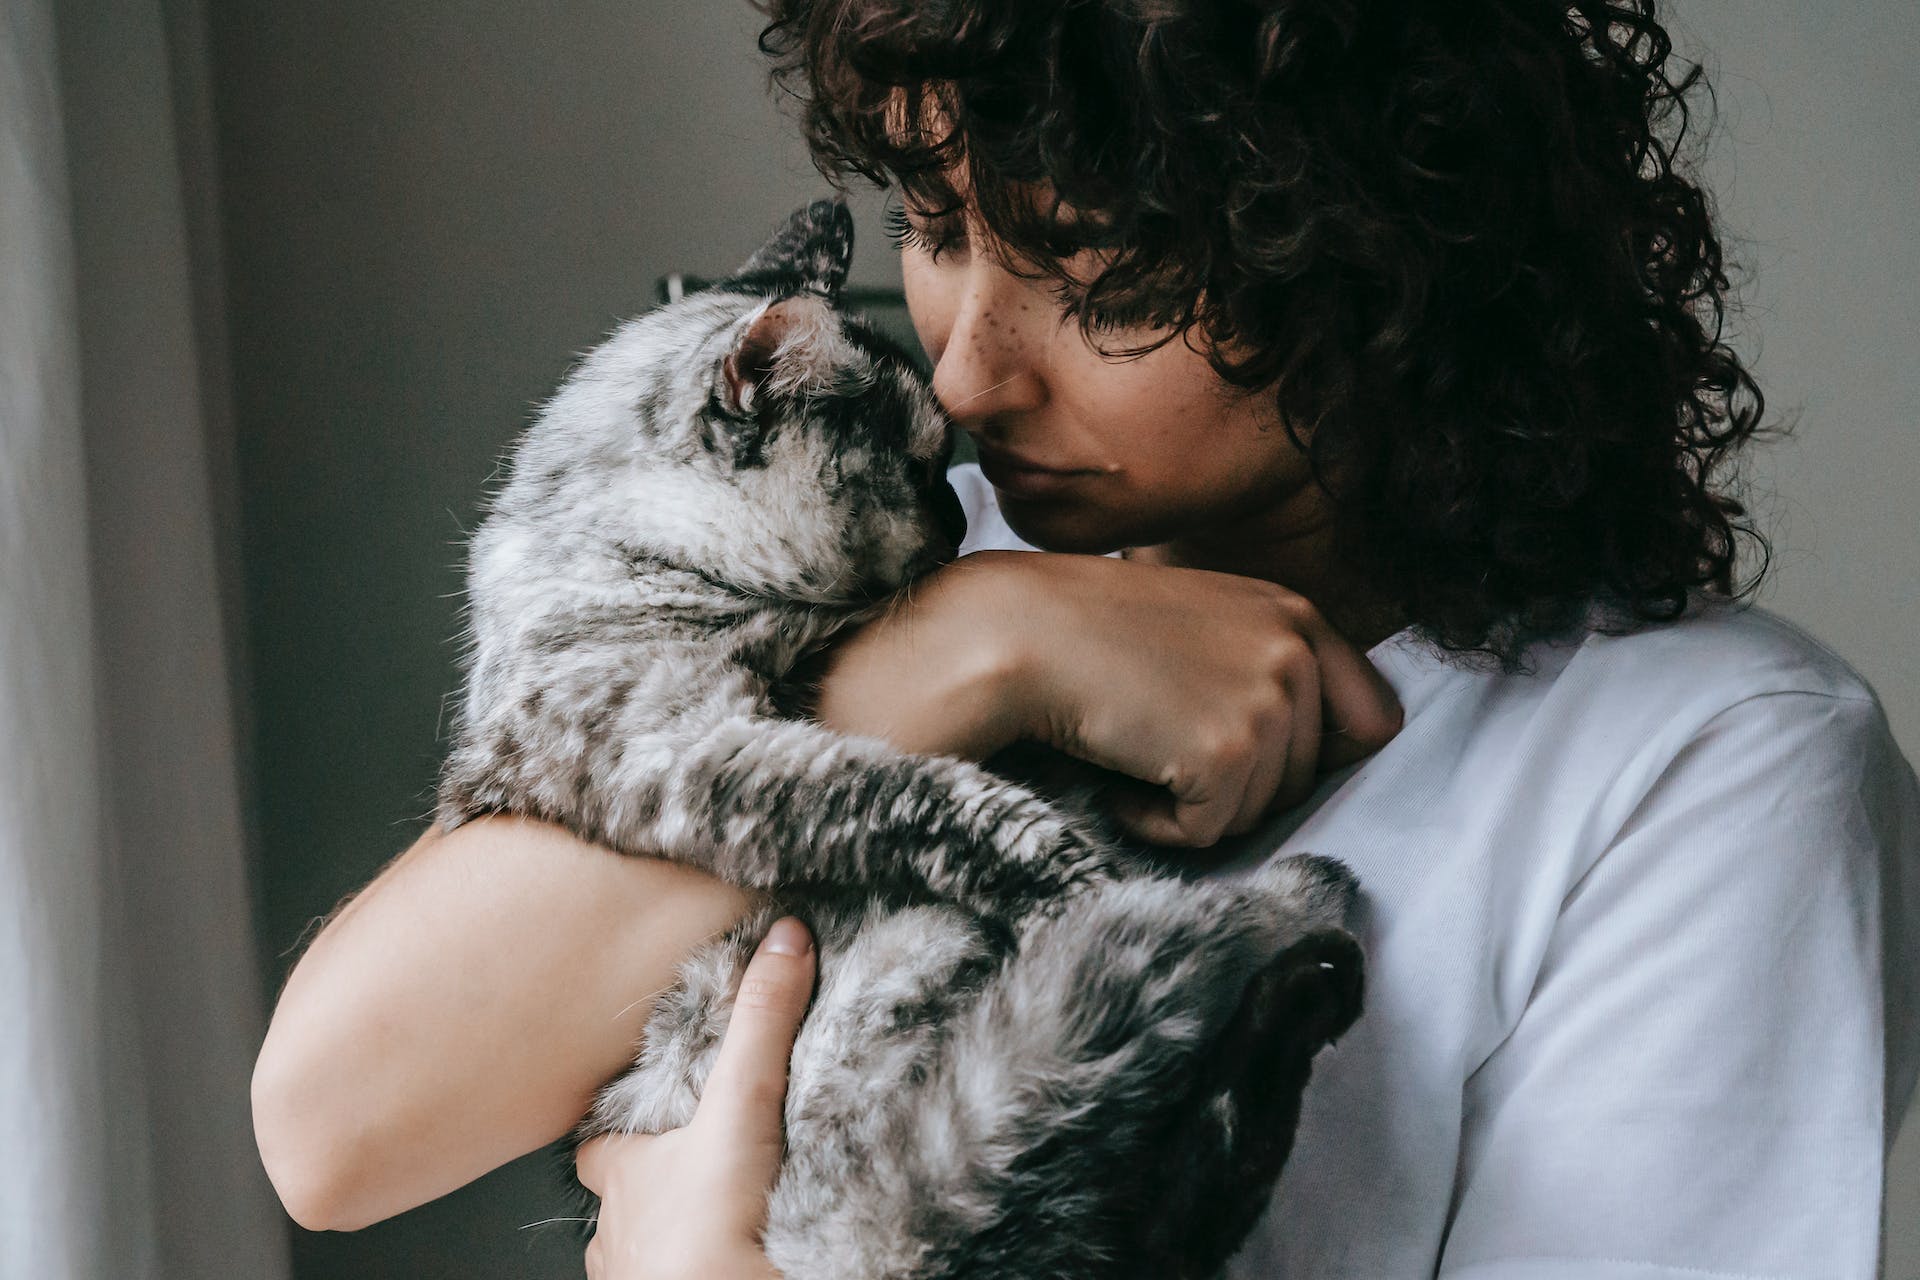 A woman hugging a cat indoors